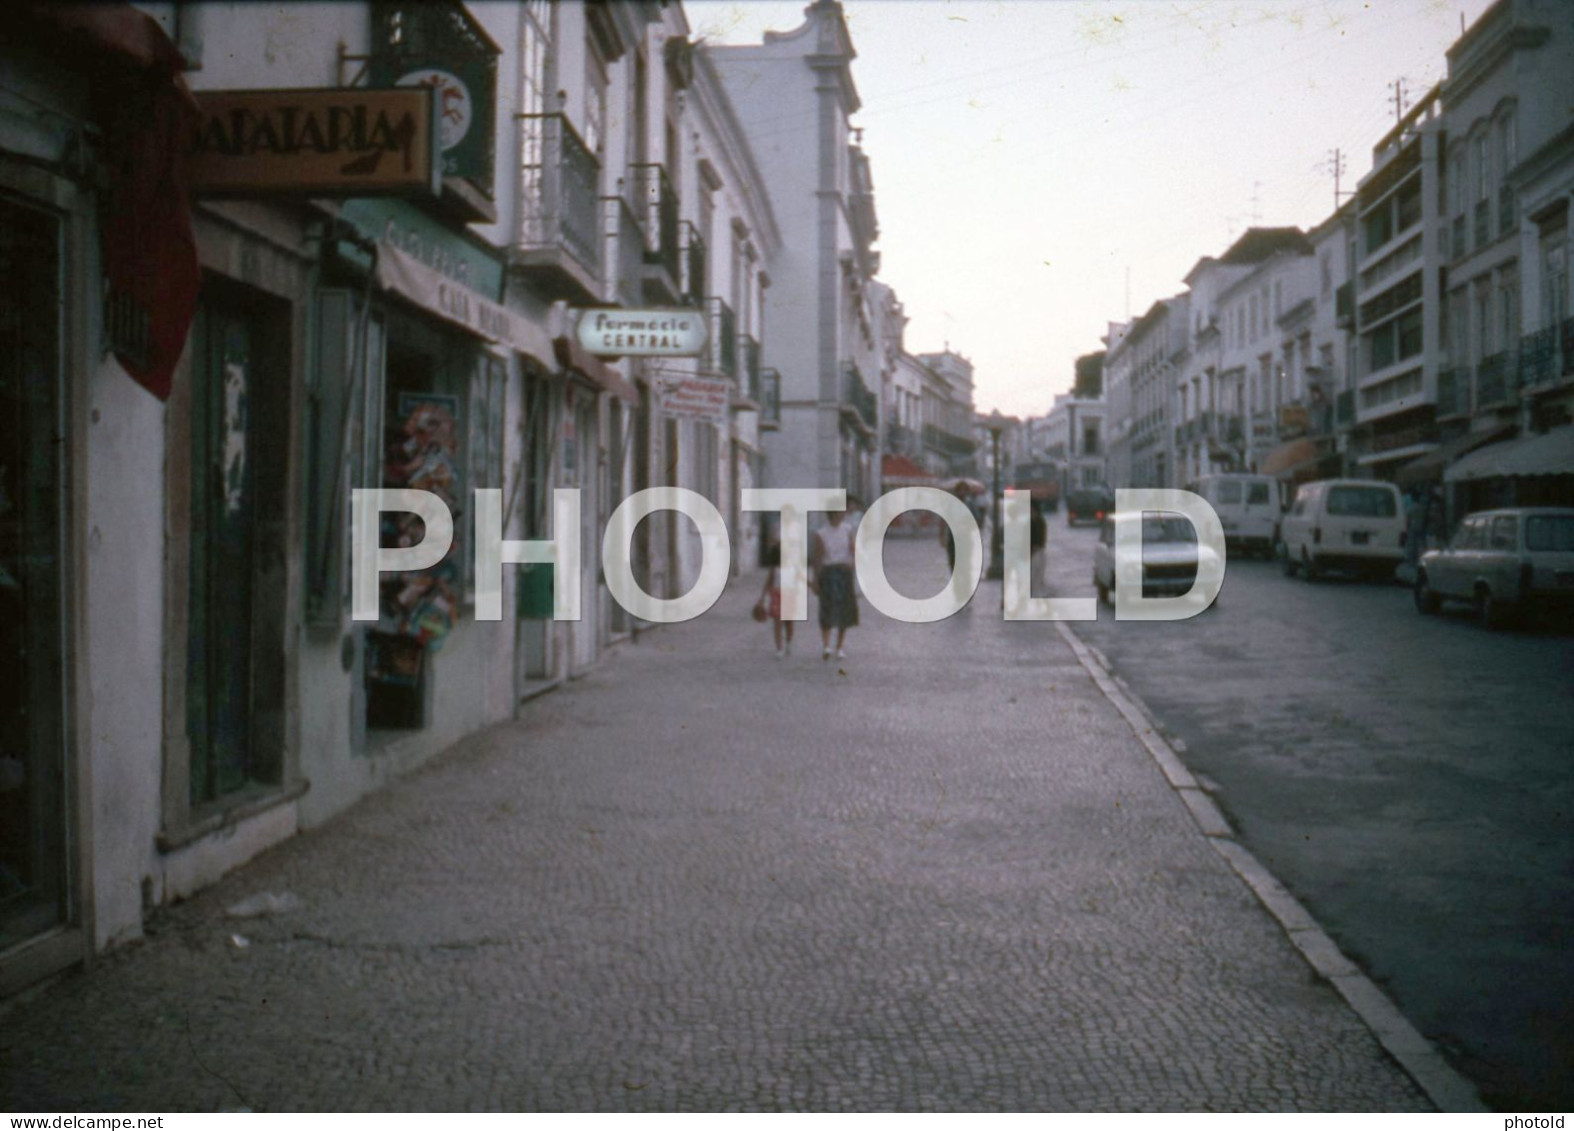 7 SLIDES SET 1984 ALGARVE PORTUGAL 16mm DIAPOSITIVE SLIDE Not PHOTO No FOTO Nb4084 - Diapositivas